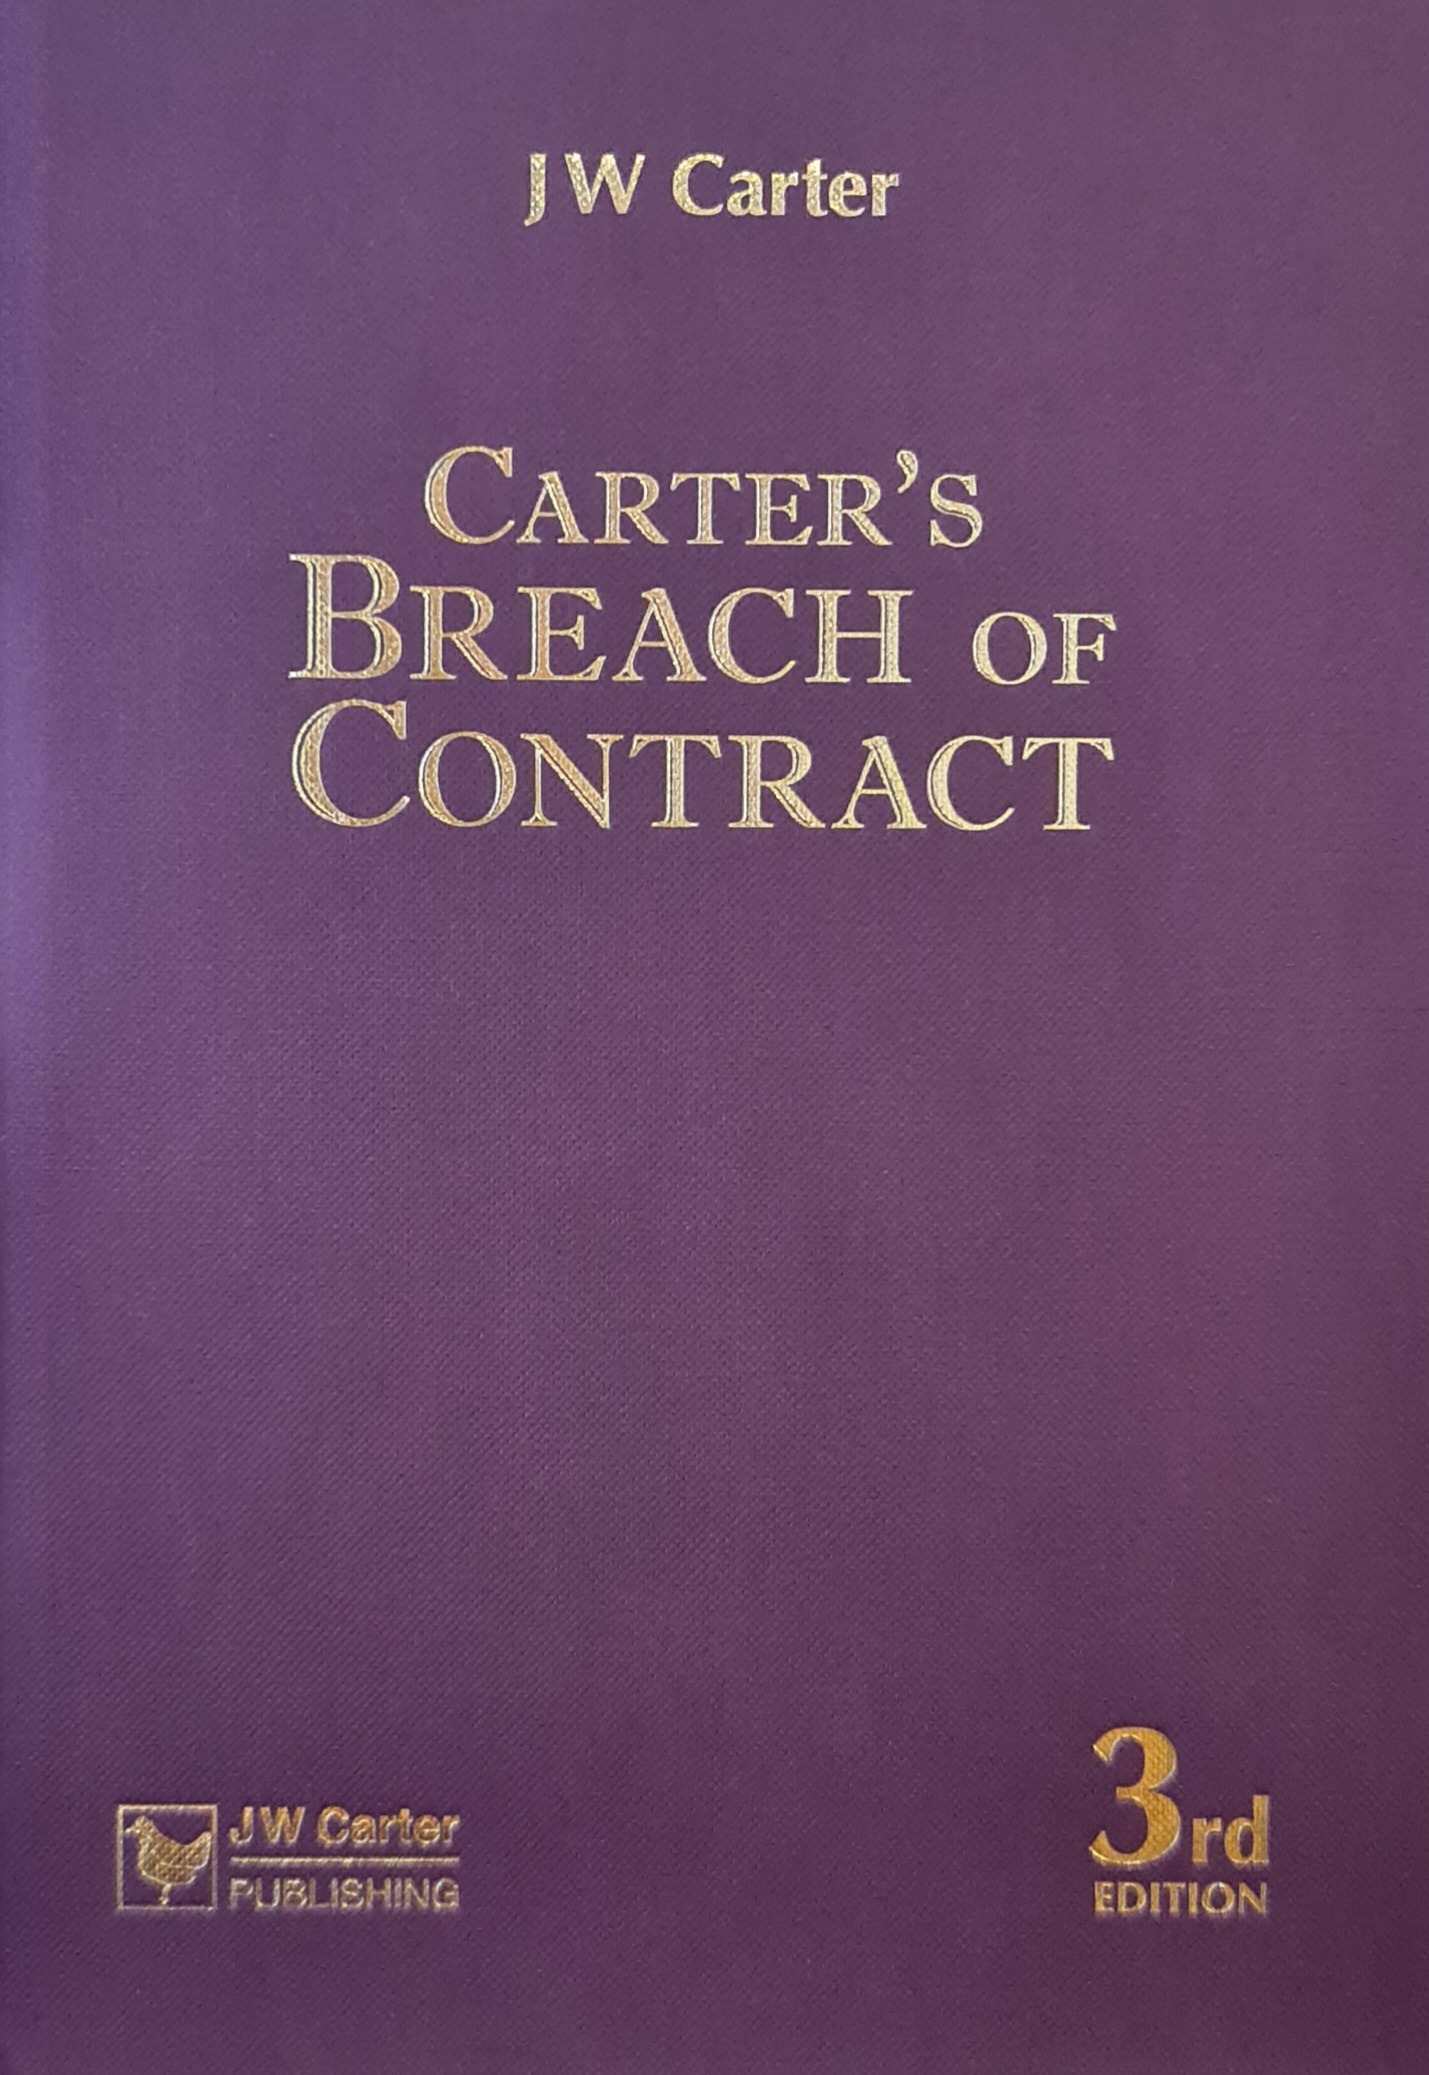 Carter's Breach of Contract e3